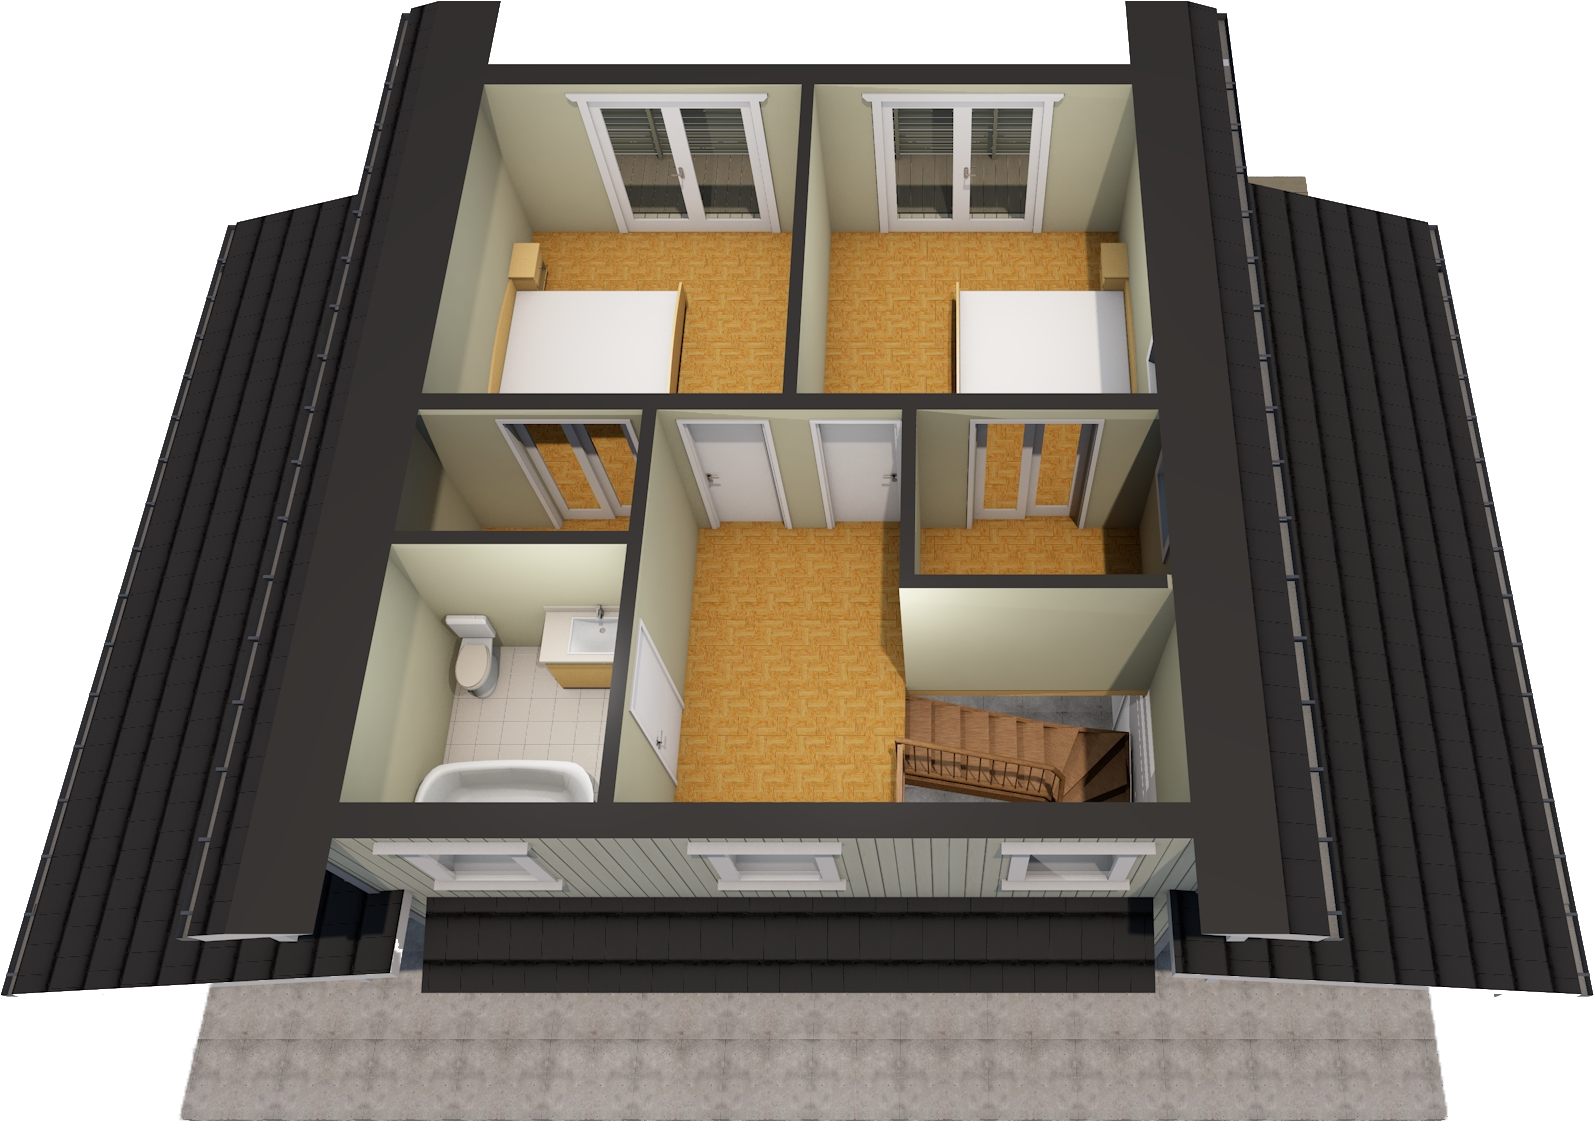 72 M²2 - Floor Plan (2000x1333)